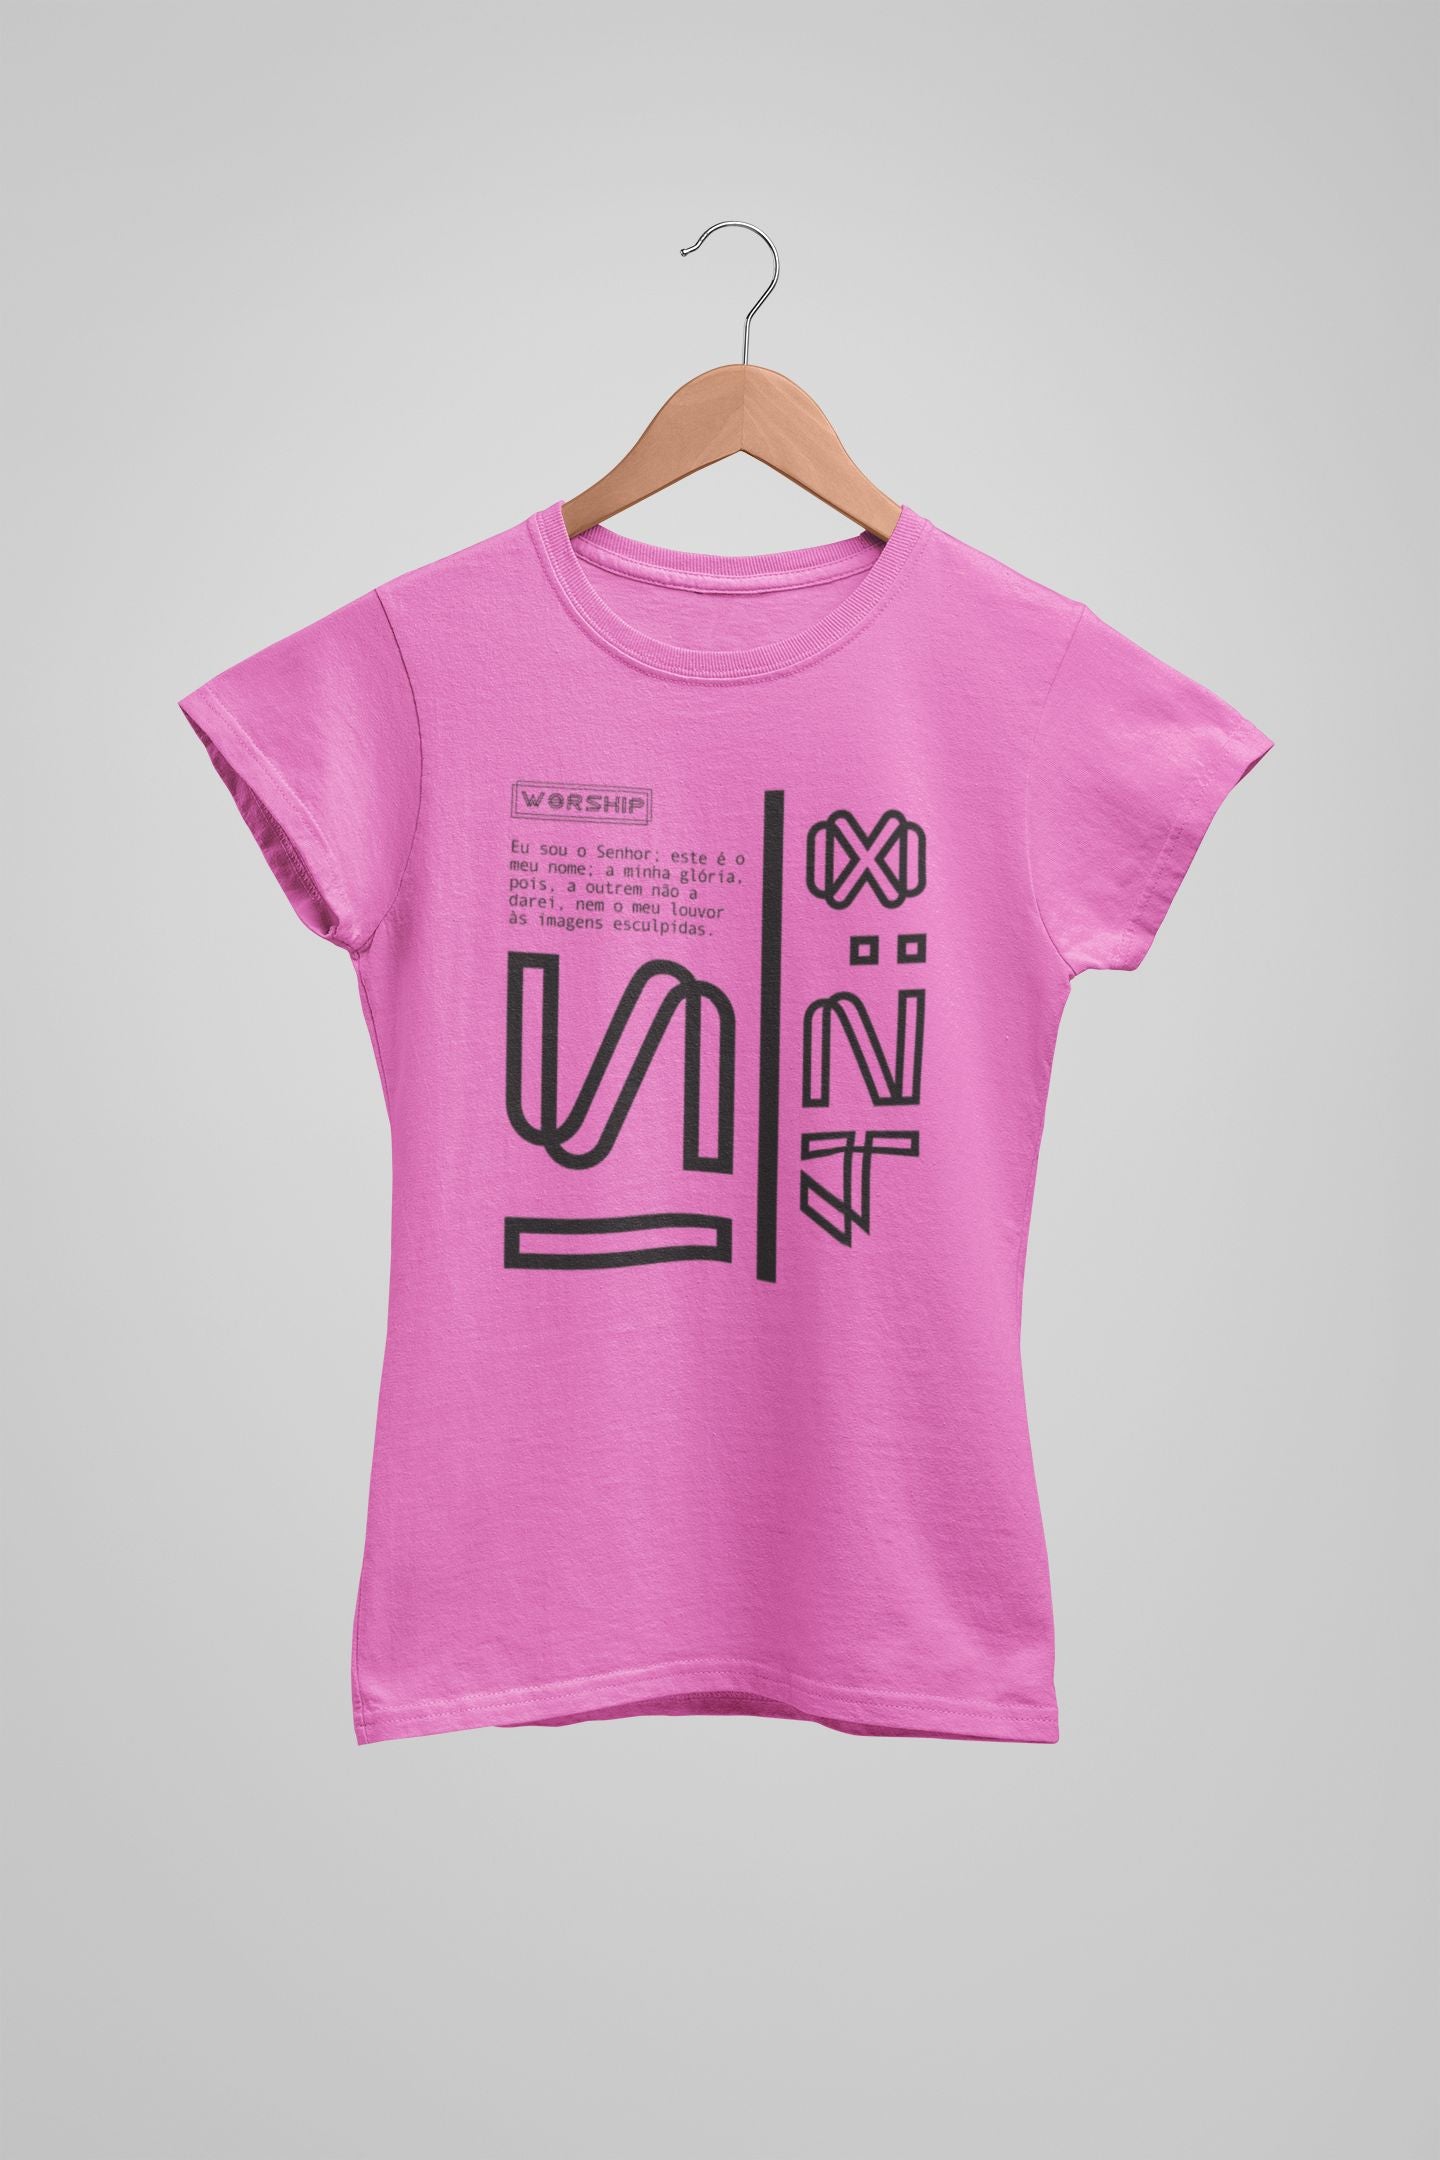 Camiseta Estonada Original 3 Feminina Rosa Claro